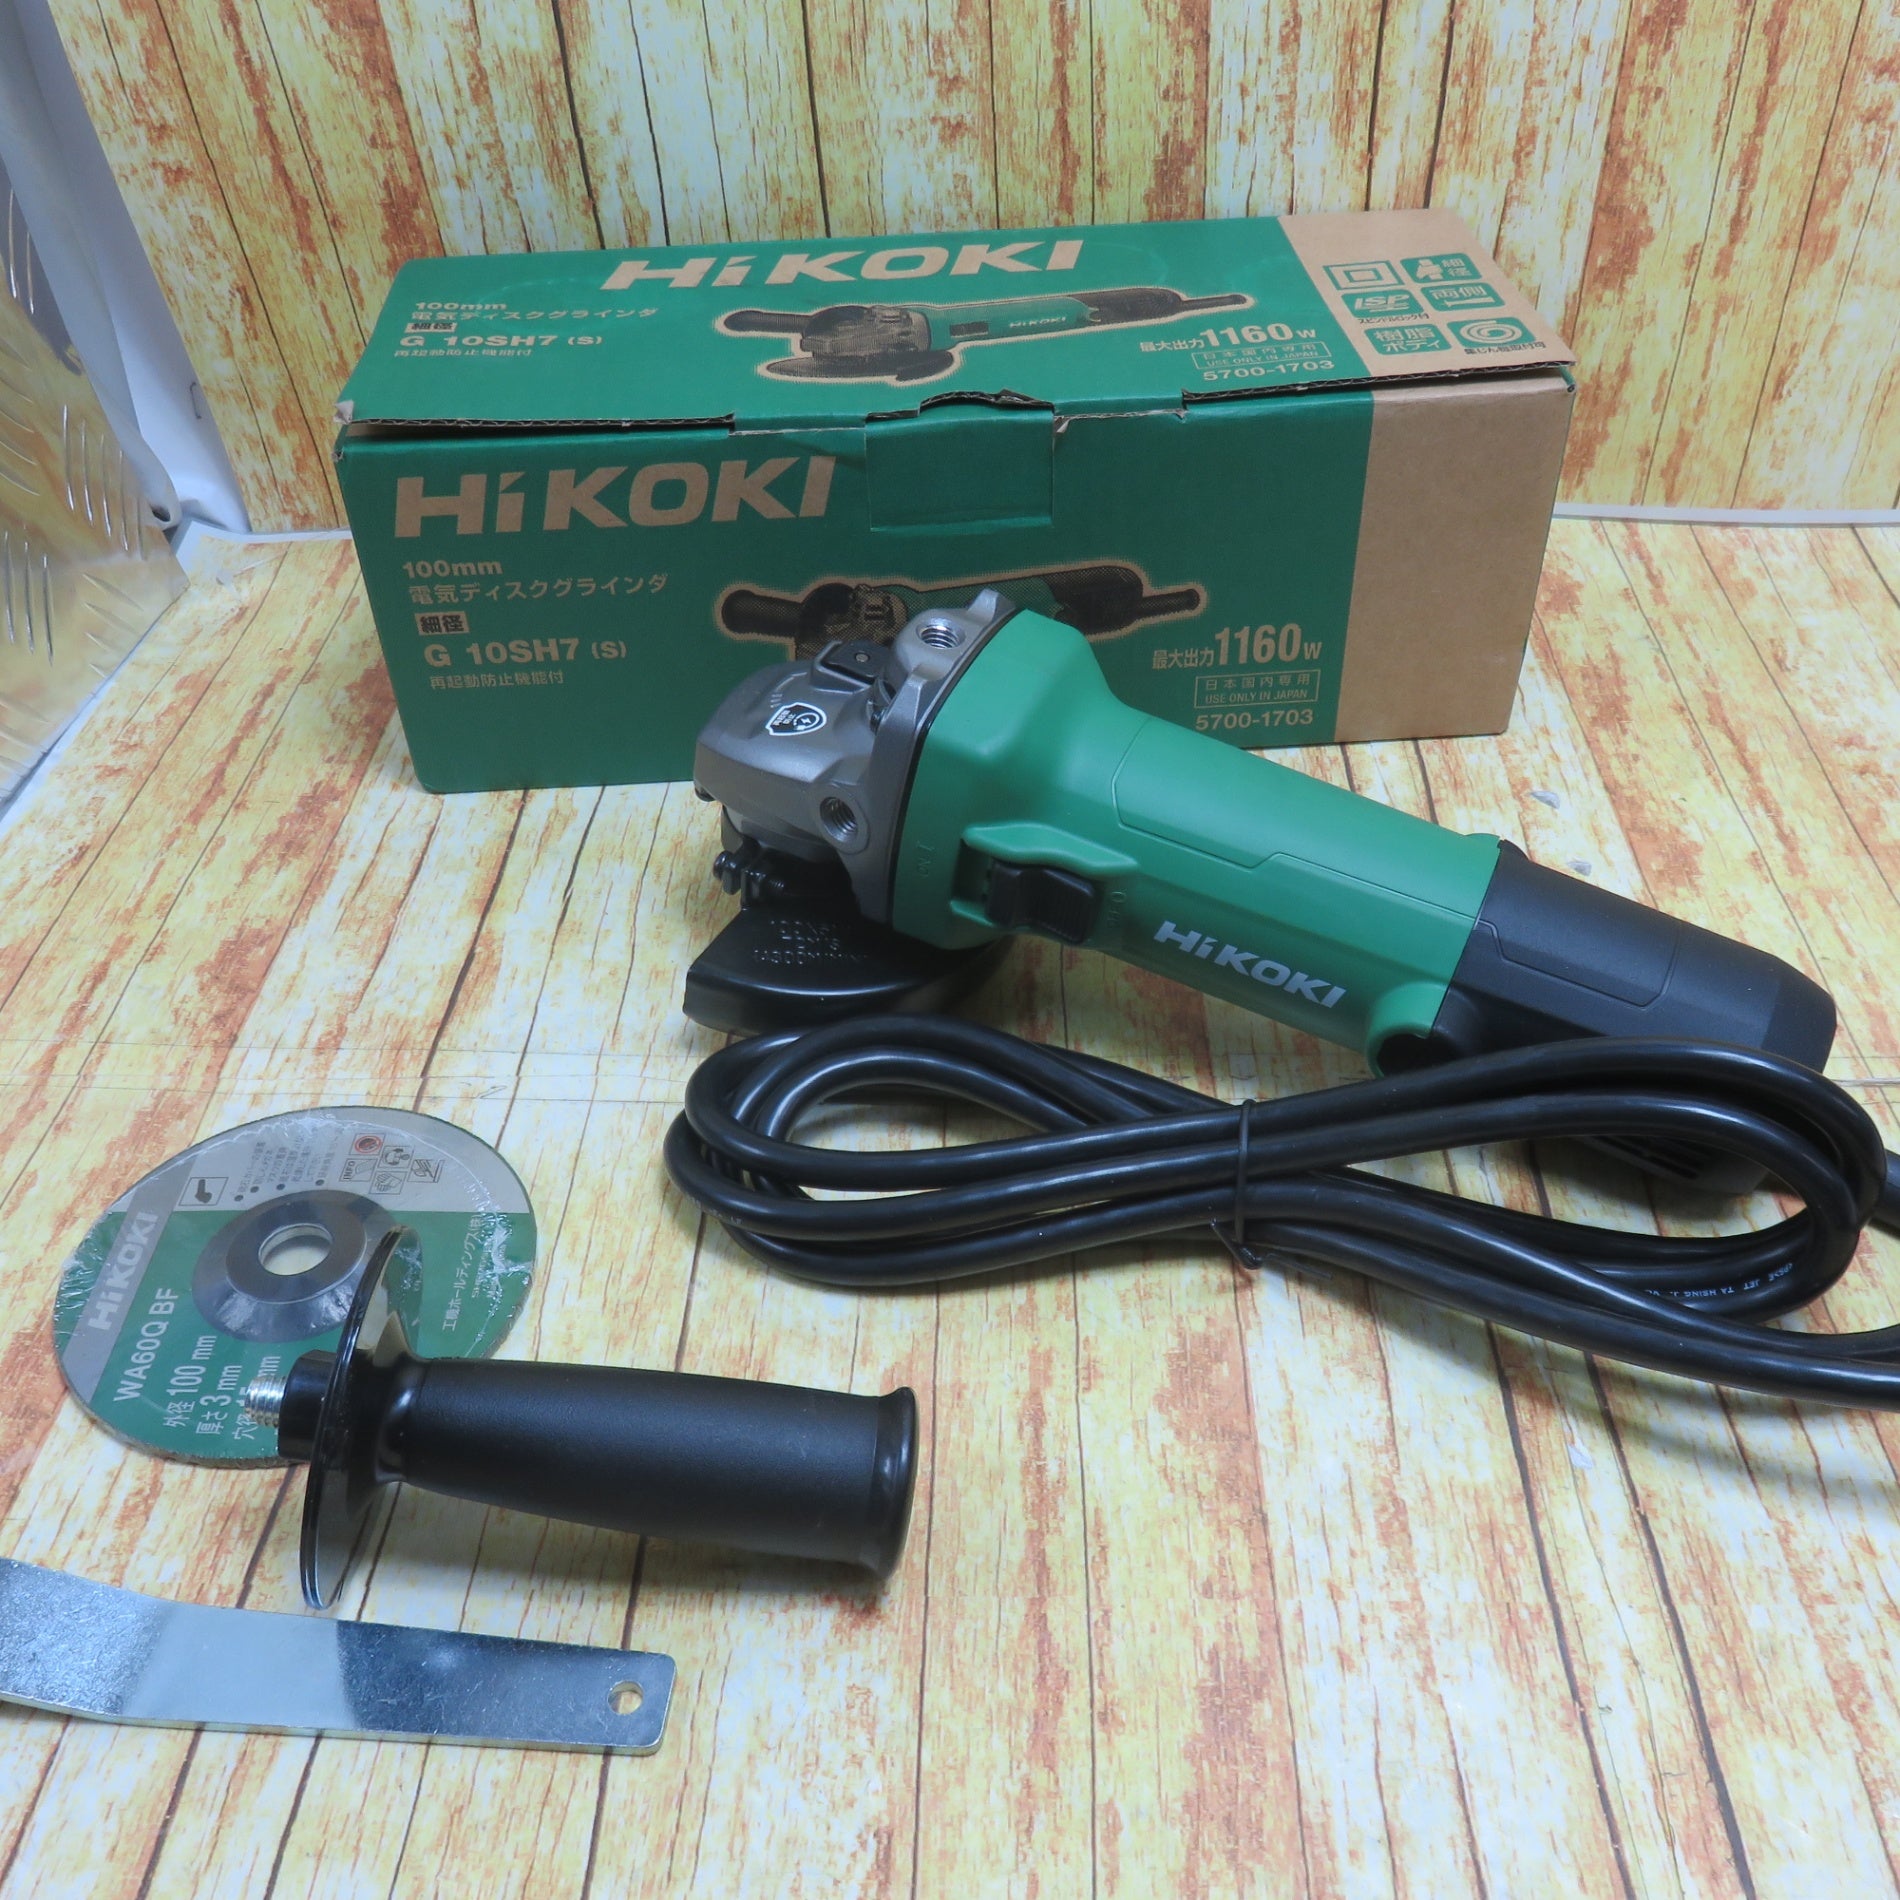 HiKOKI ハイコーキ G 10SH7(S) 電気ディスクグラインダ 100mm 再起動